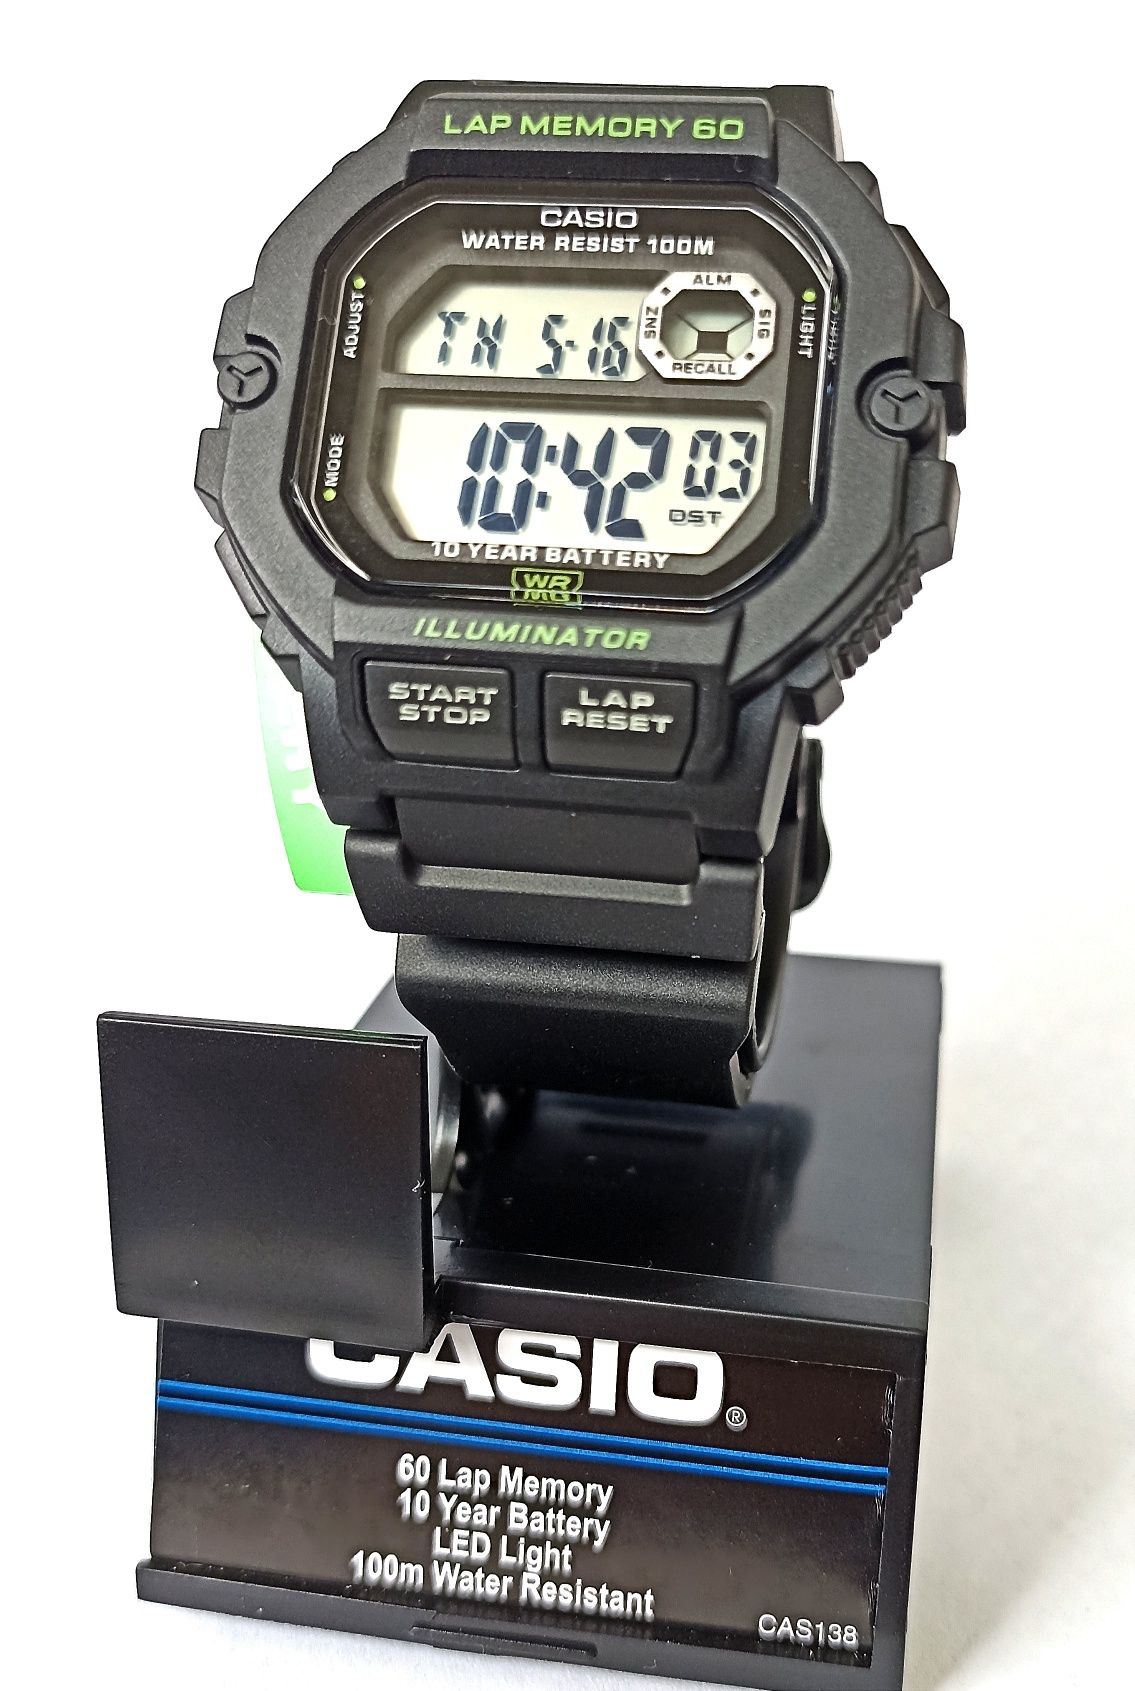 Casio WS1400H-1AV Lap Memory 60 Часы наручные